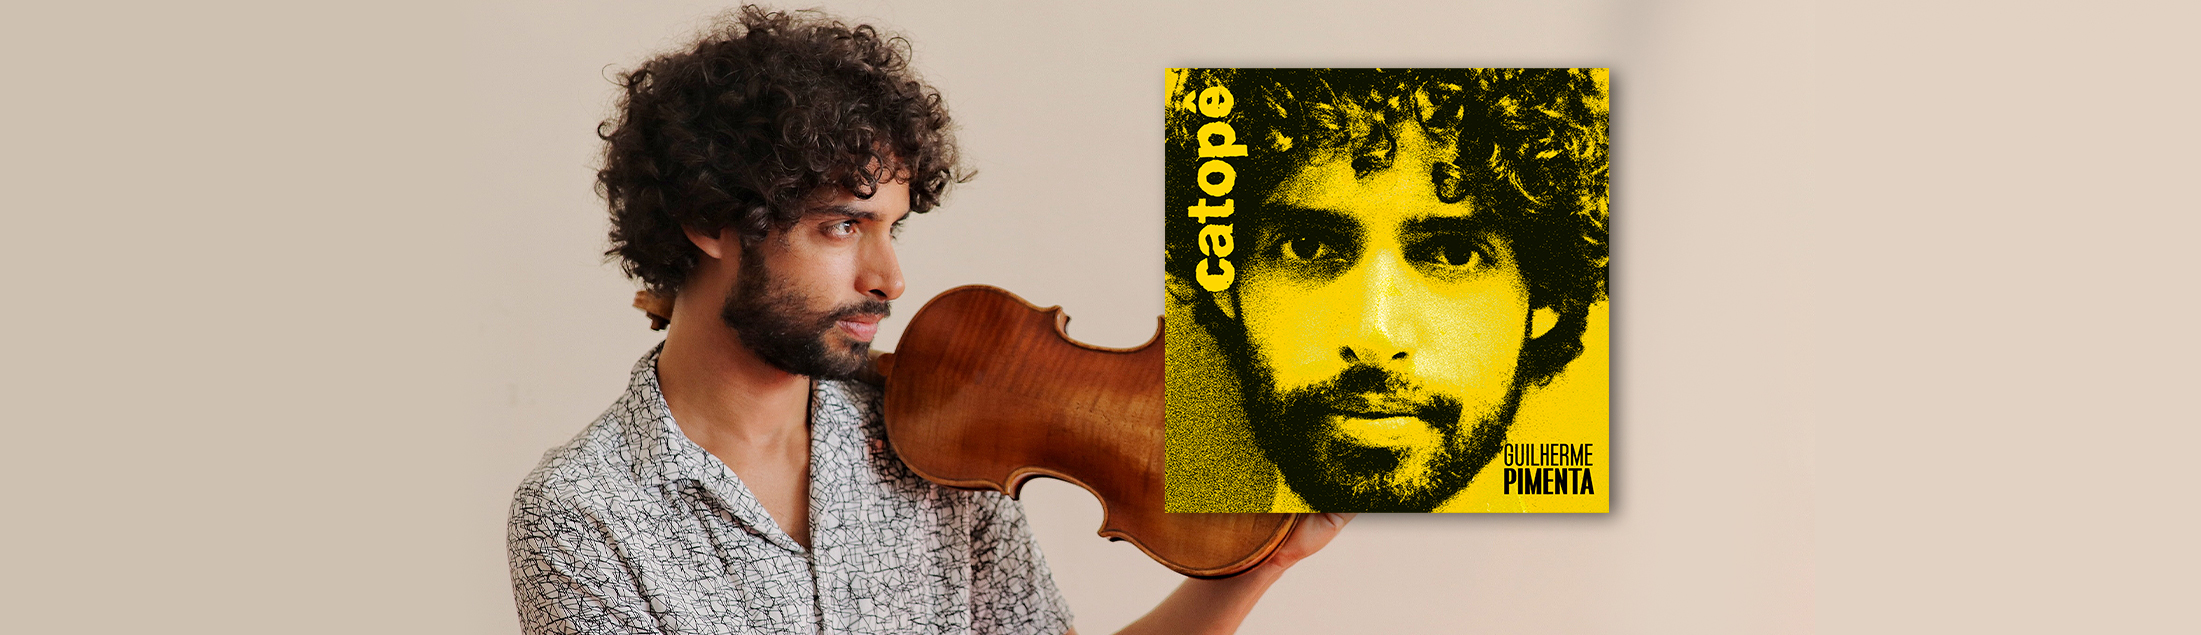 O violinista e compositor Guilherme Pimenta lança 'Catopê', seu primeiro disco